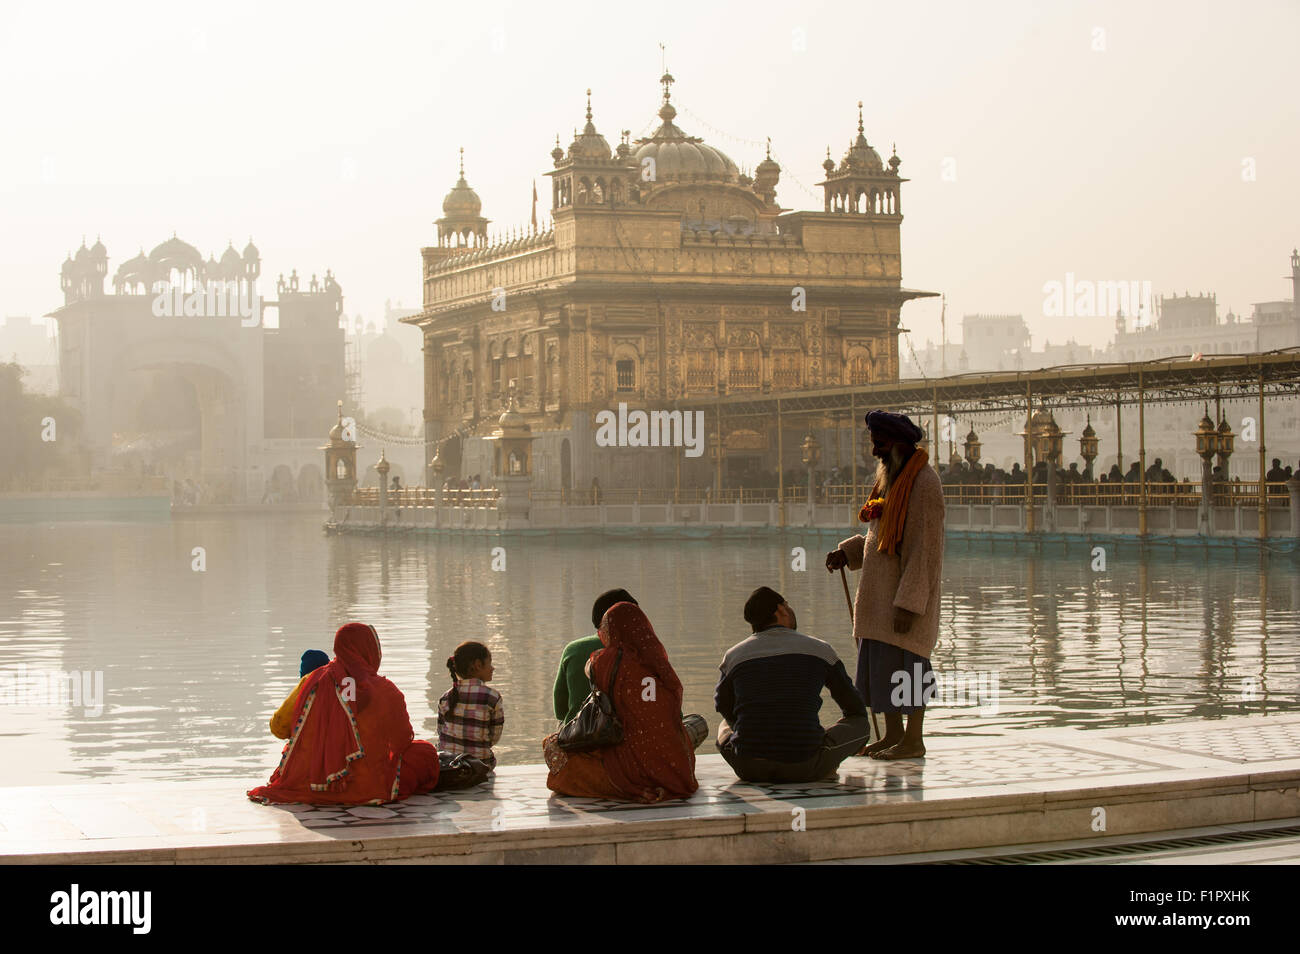 Amritsar, Punjab, en Inde. Le Temple d'Or - Harmandir Sahib - à l'aube avec un vieux message d'une famille Sikh assis en tailleur sur le côté du lac. Banque D'Images